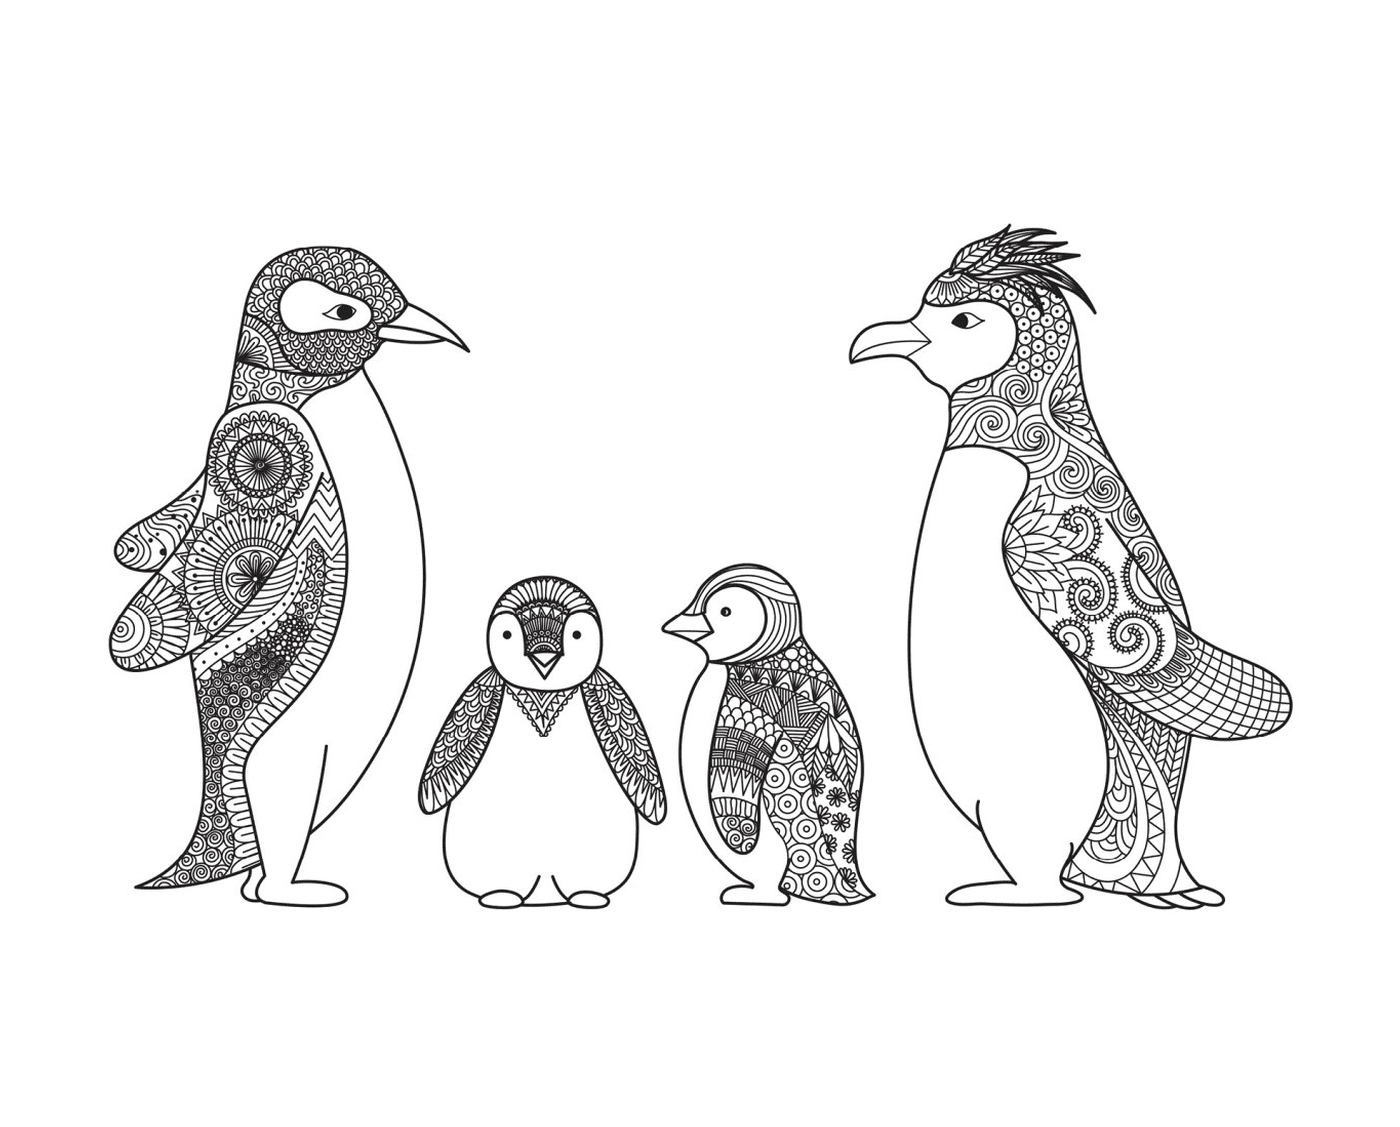  Disegno di famiglia dei pinguini 